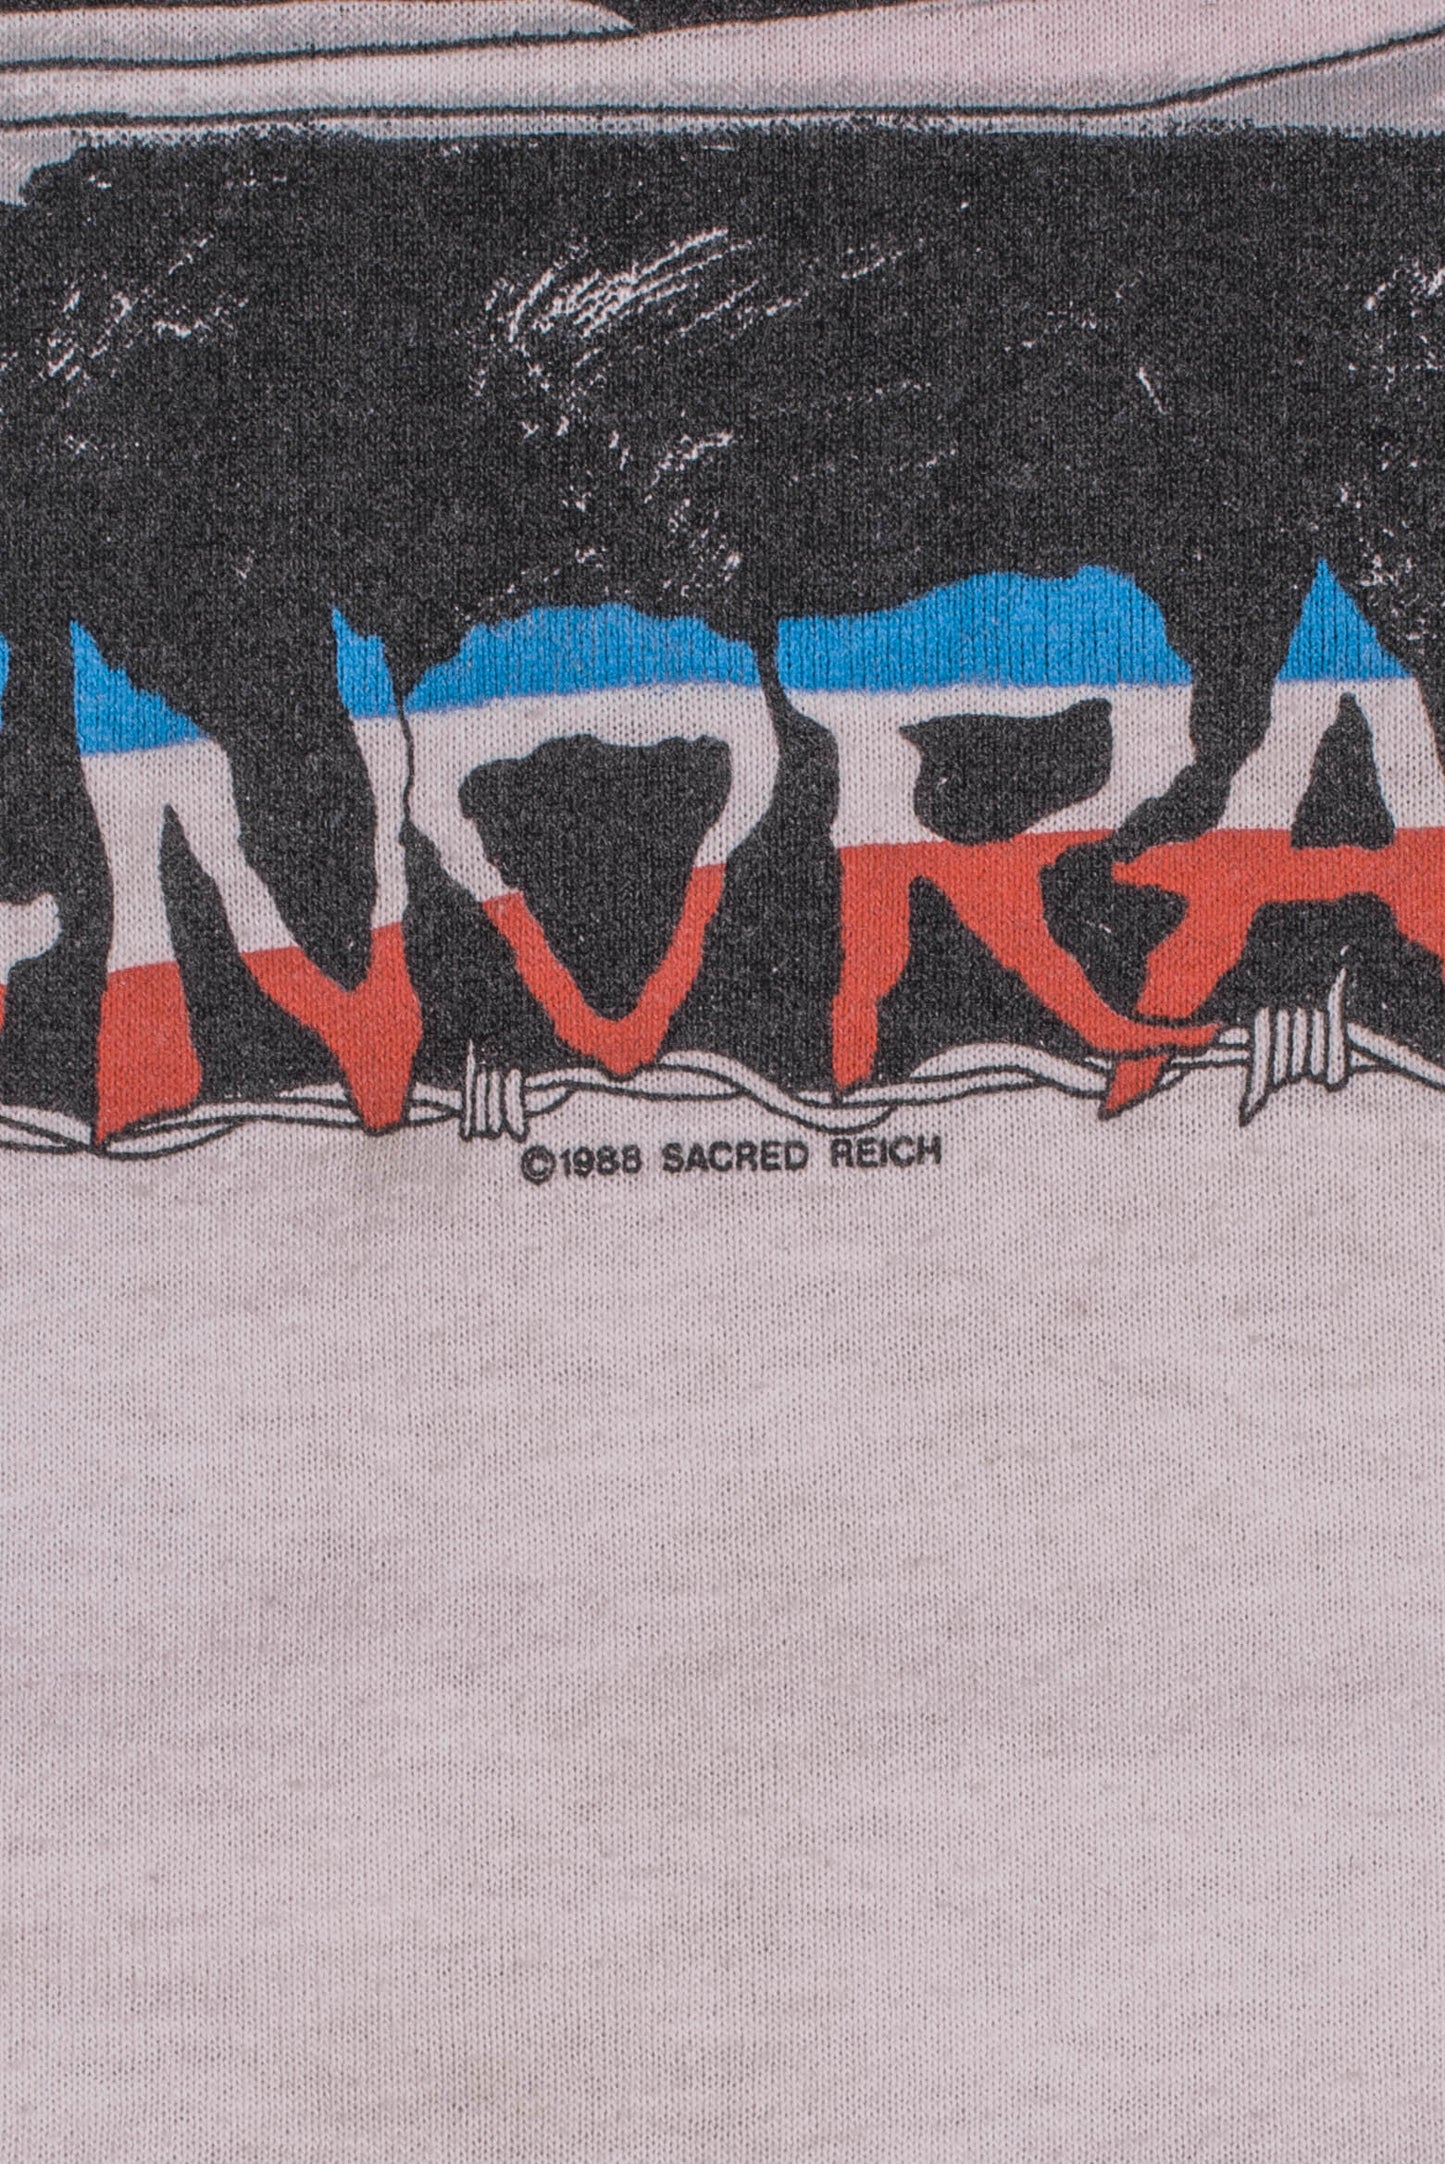 Vintage 1988 Sacred Reich Ignorance Tour T-Shirt